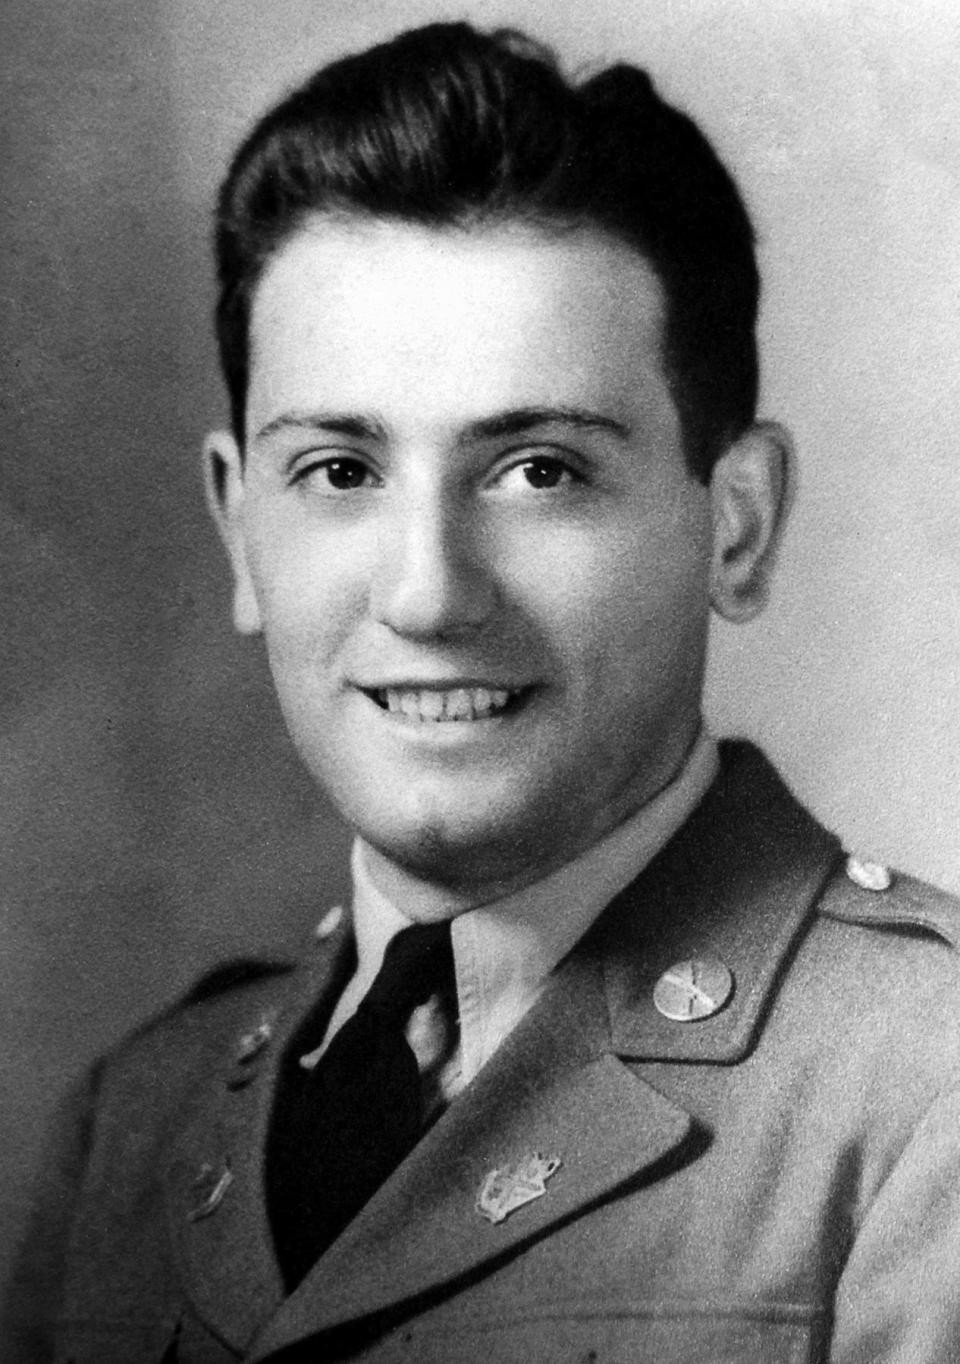 74 năm trước, ông nội của tân HLV Chelsea đánh cược sinh mạng để cứu 2 lính Mỹ thoát khỏi phát xít Đức - Ảnh 1.